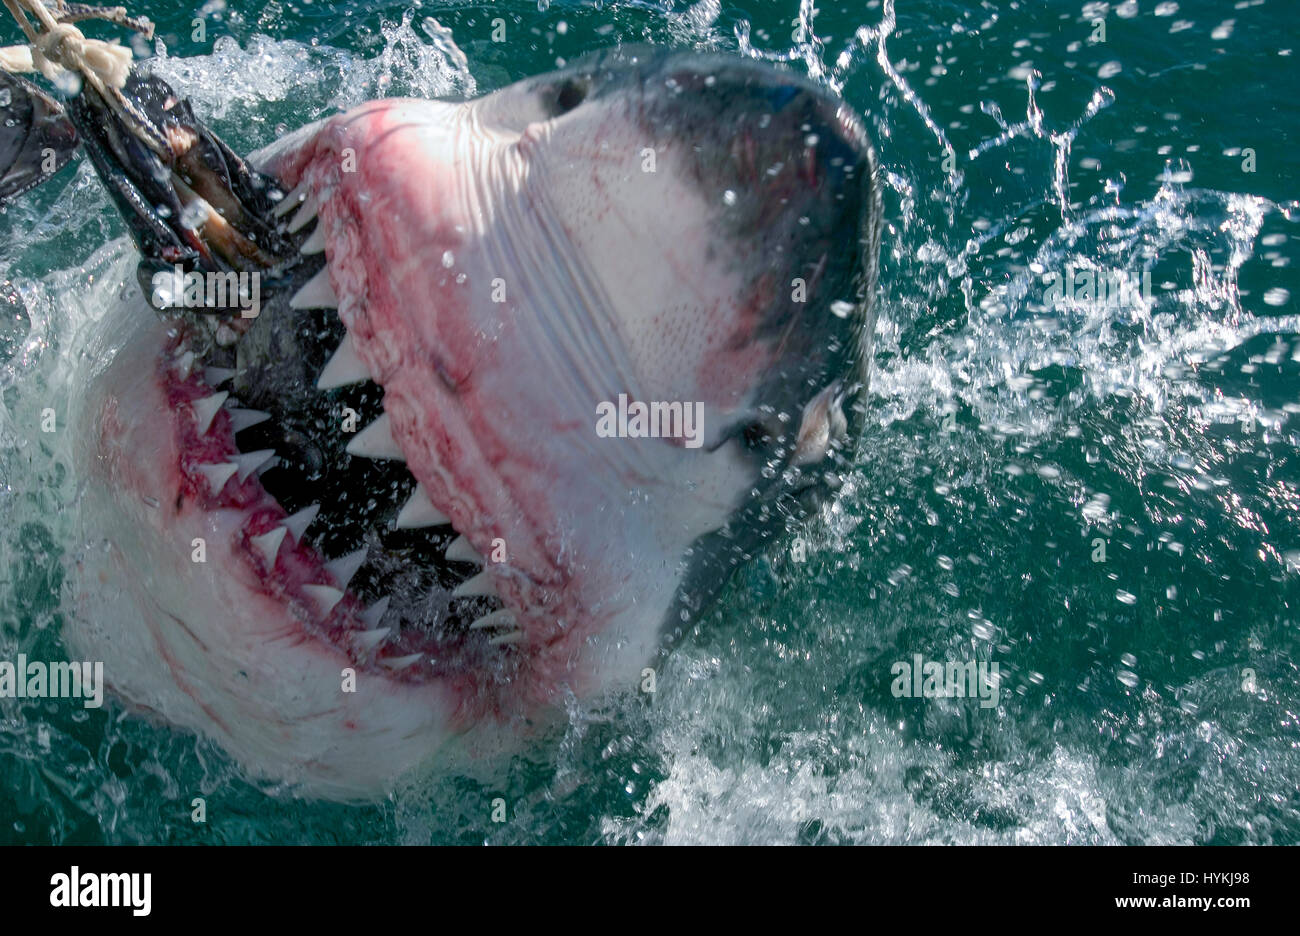 De Superbes Images Ont Capture Ce Qui Pourrait Etre Le Plus Grand Requin Blanc Dans Le Monde L Immense Predateur Vient Face A Face Avec Deux Plongeurs Dans Une Cage Qu Il Met A